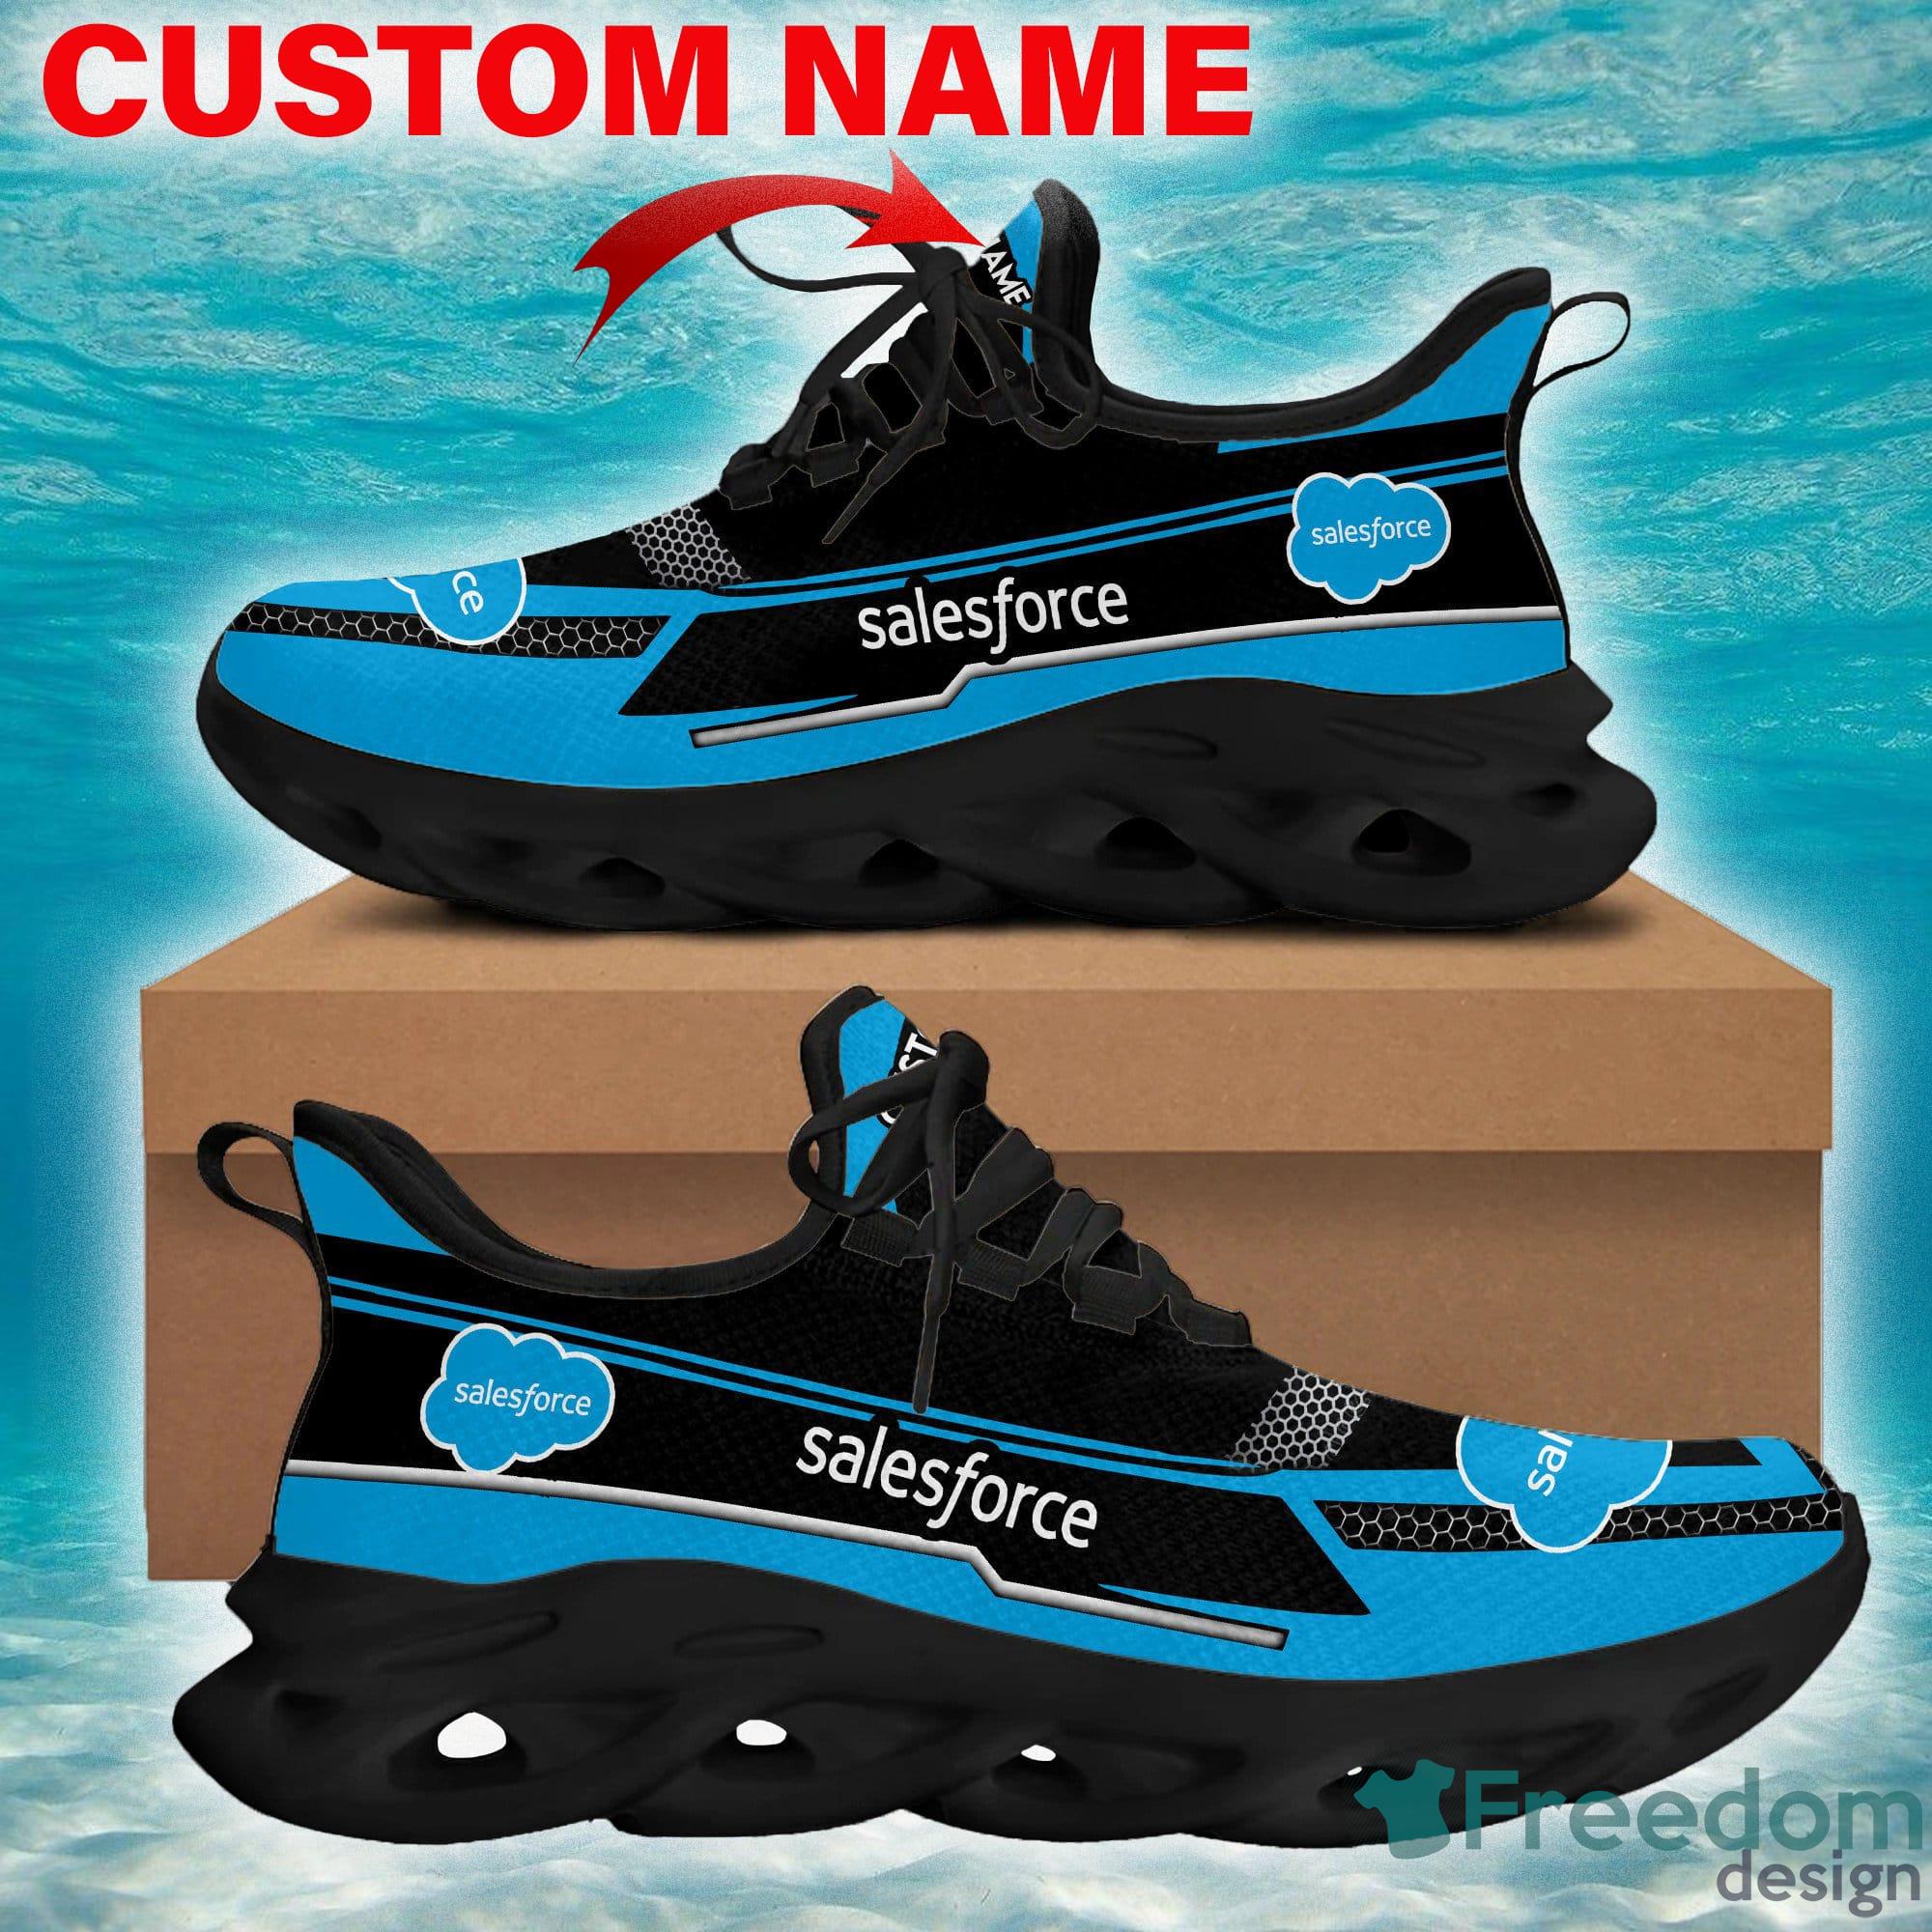 salesforce Sneaker Brand Running Sneakers Runway Max Soul Shoes Custom Name - salesforce Brand Custom Name Max Soul Shoes Photo 1